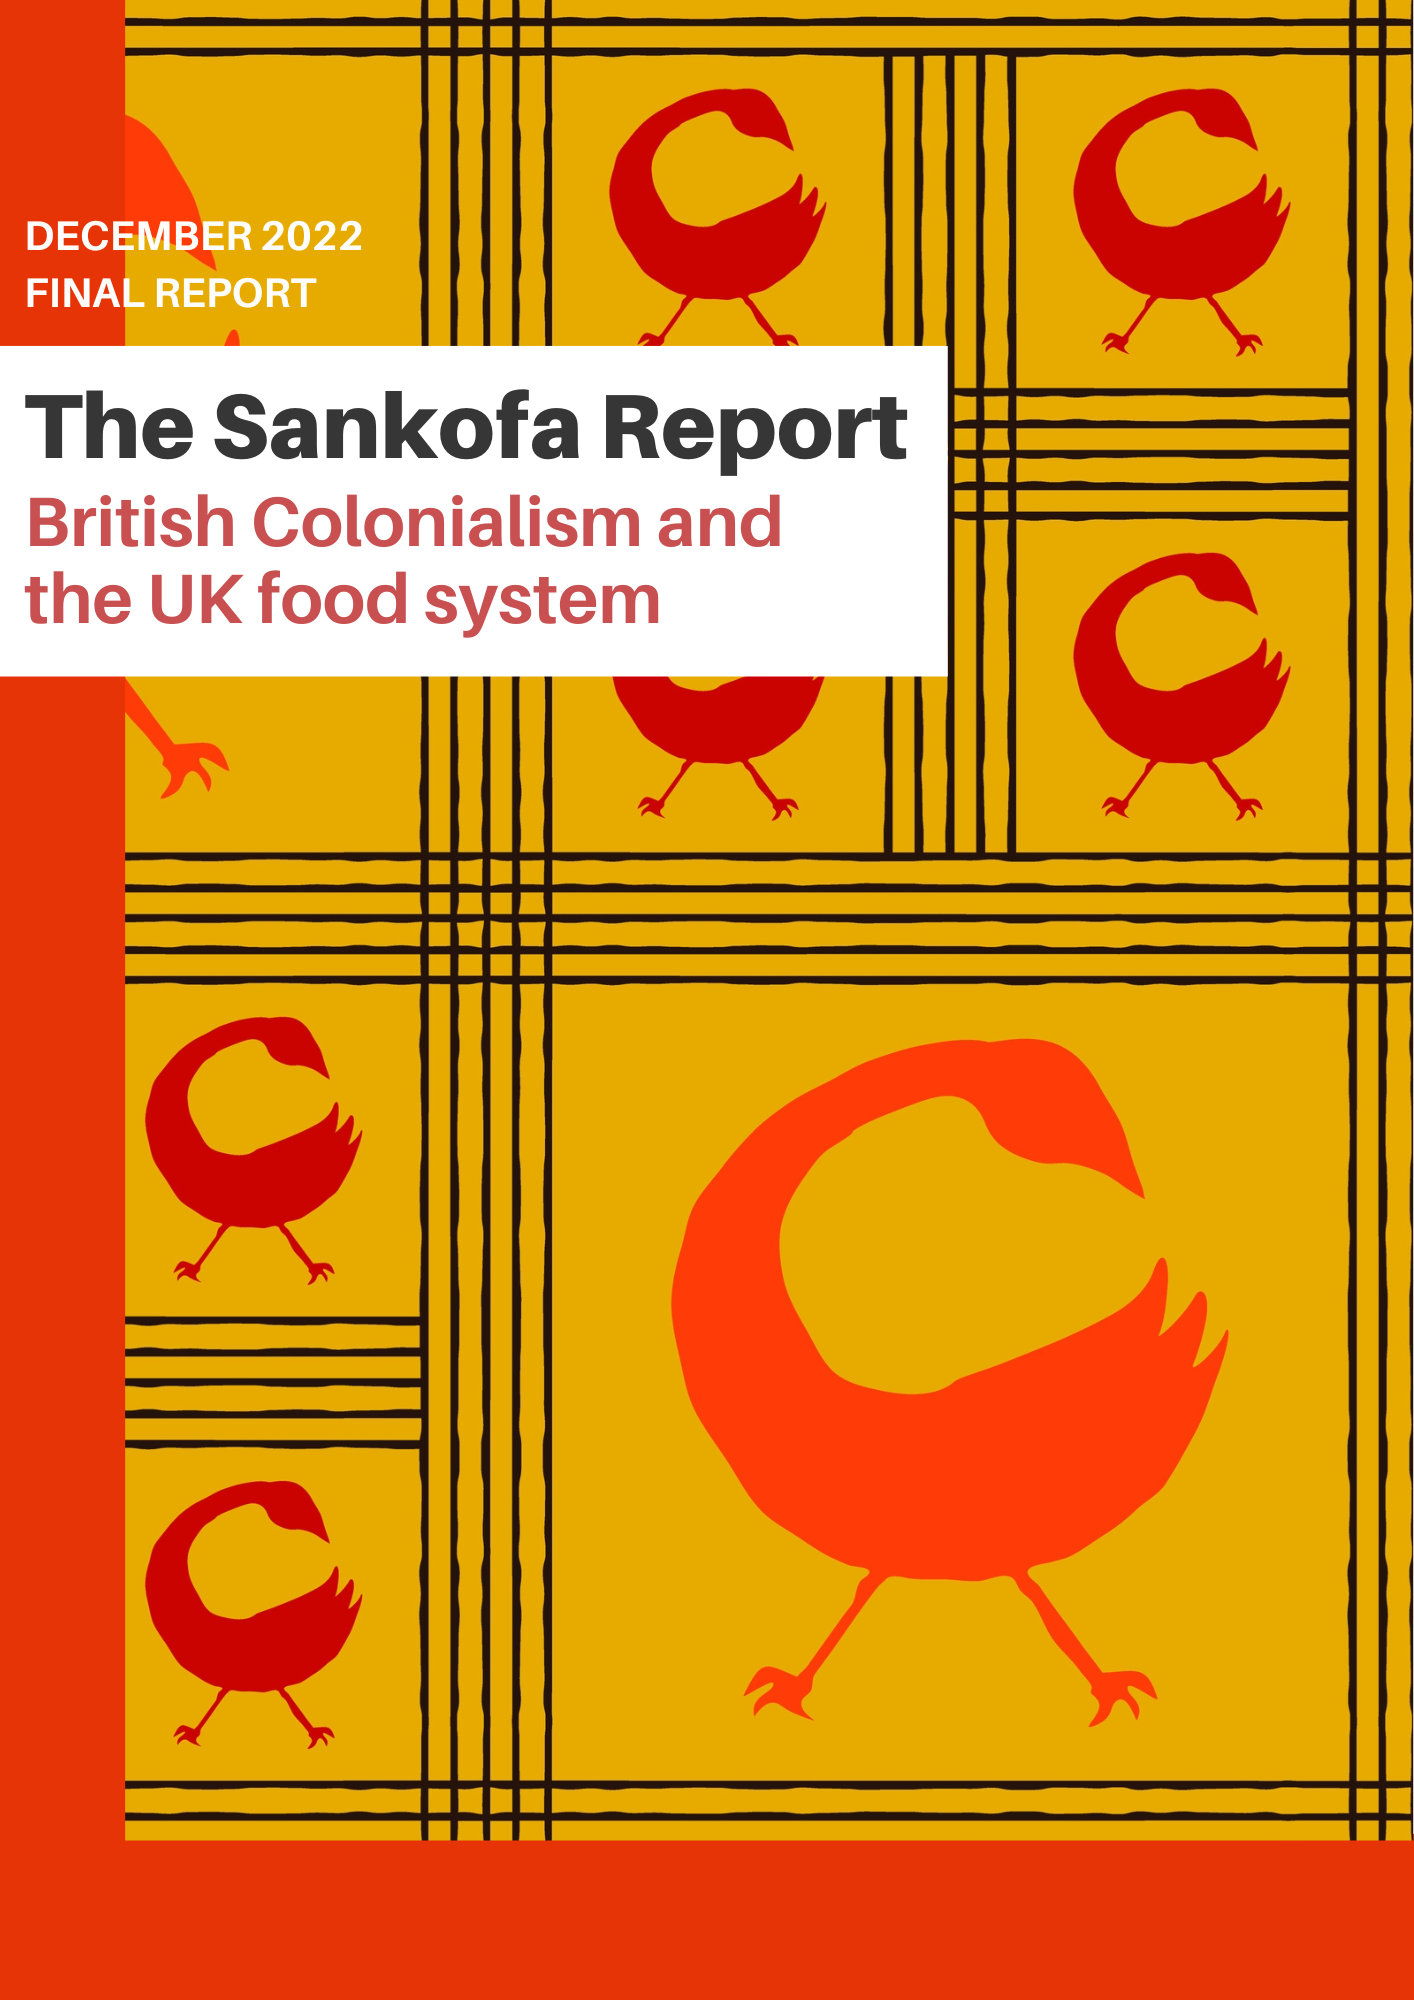 The Sankofa report by Jada Phillips